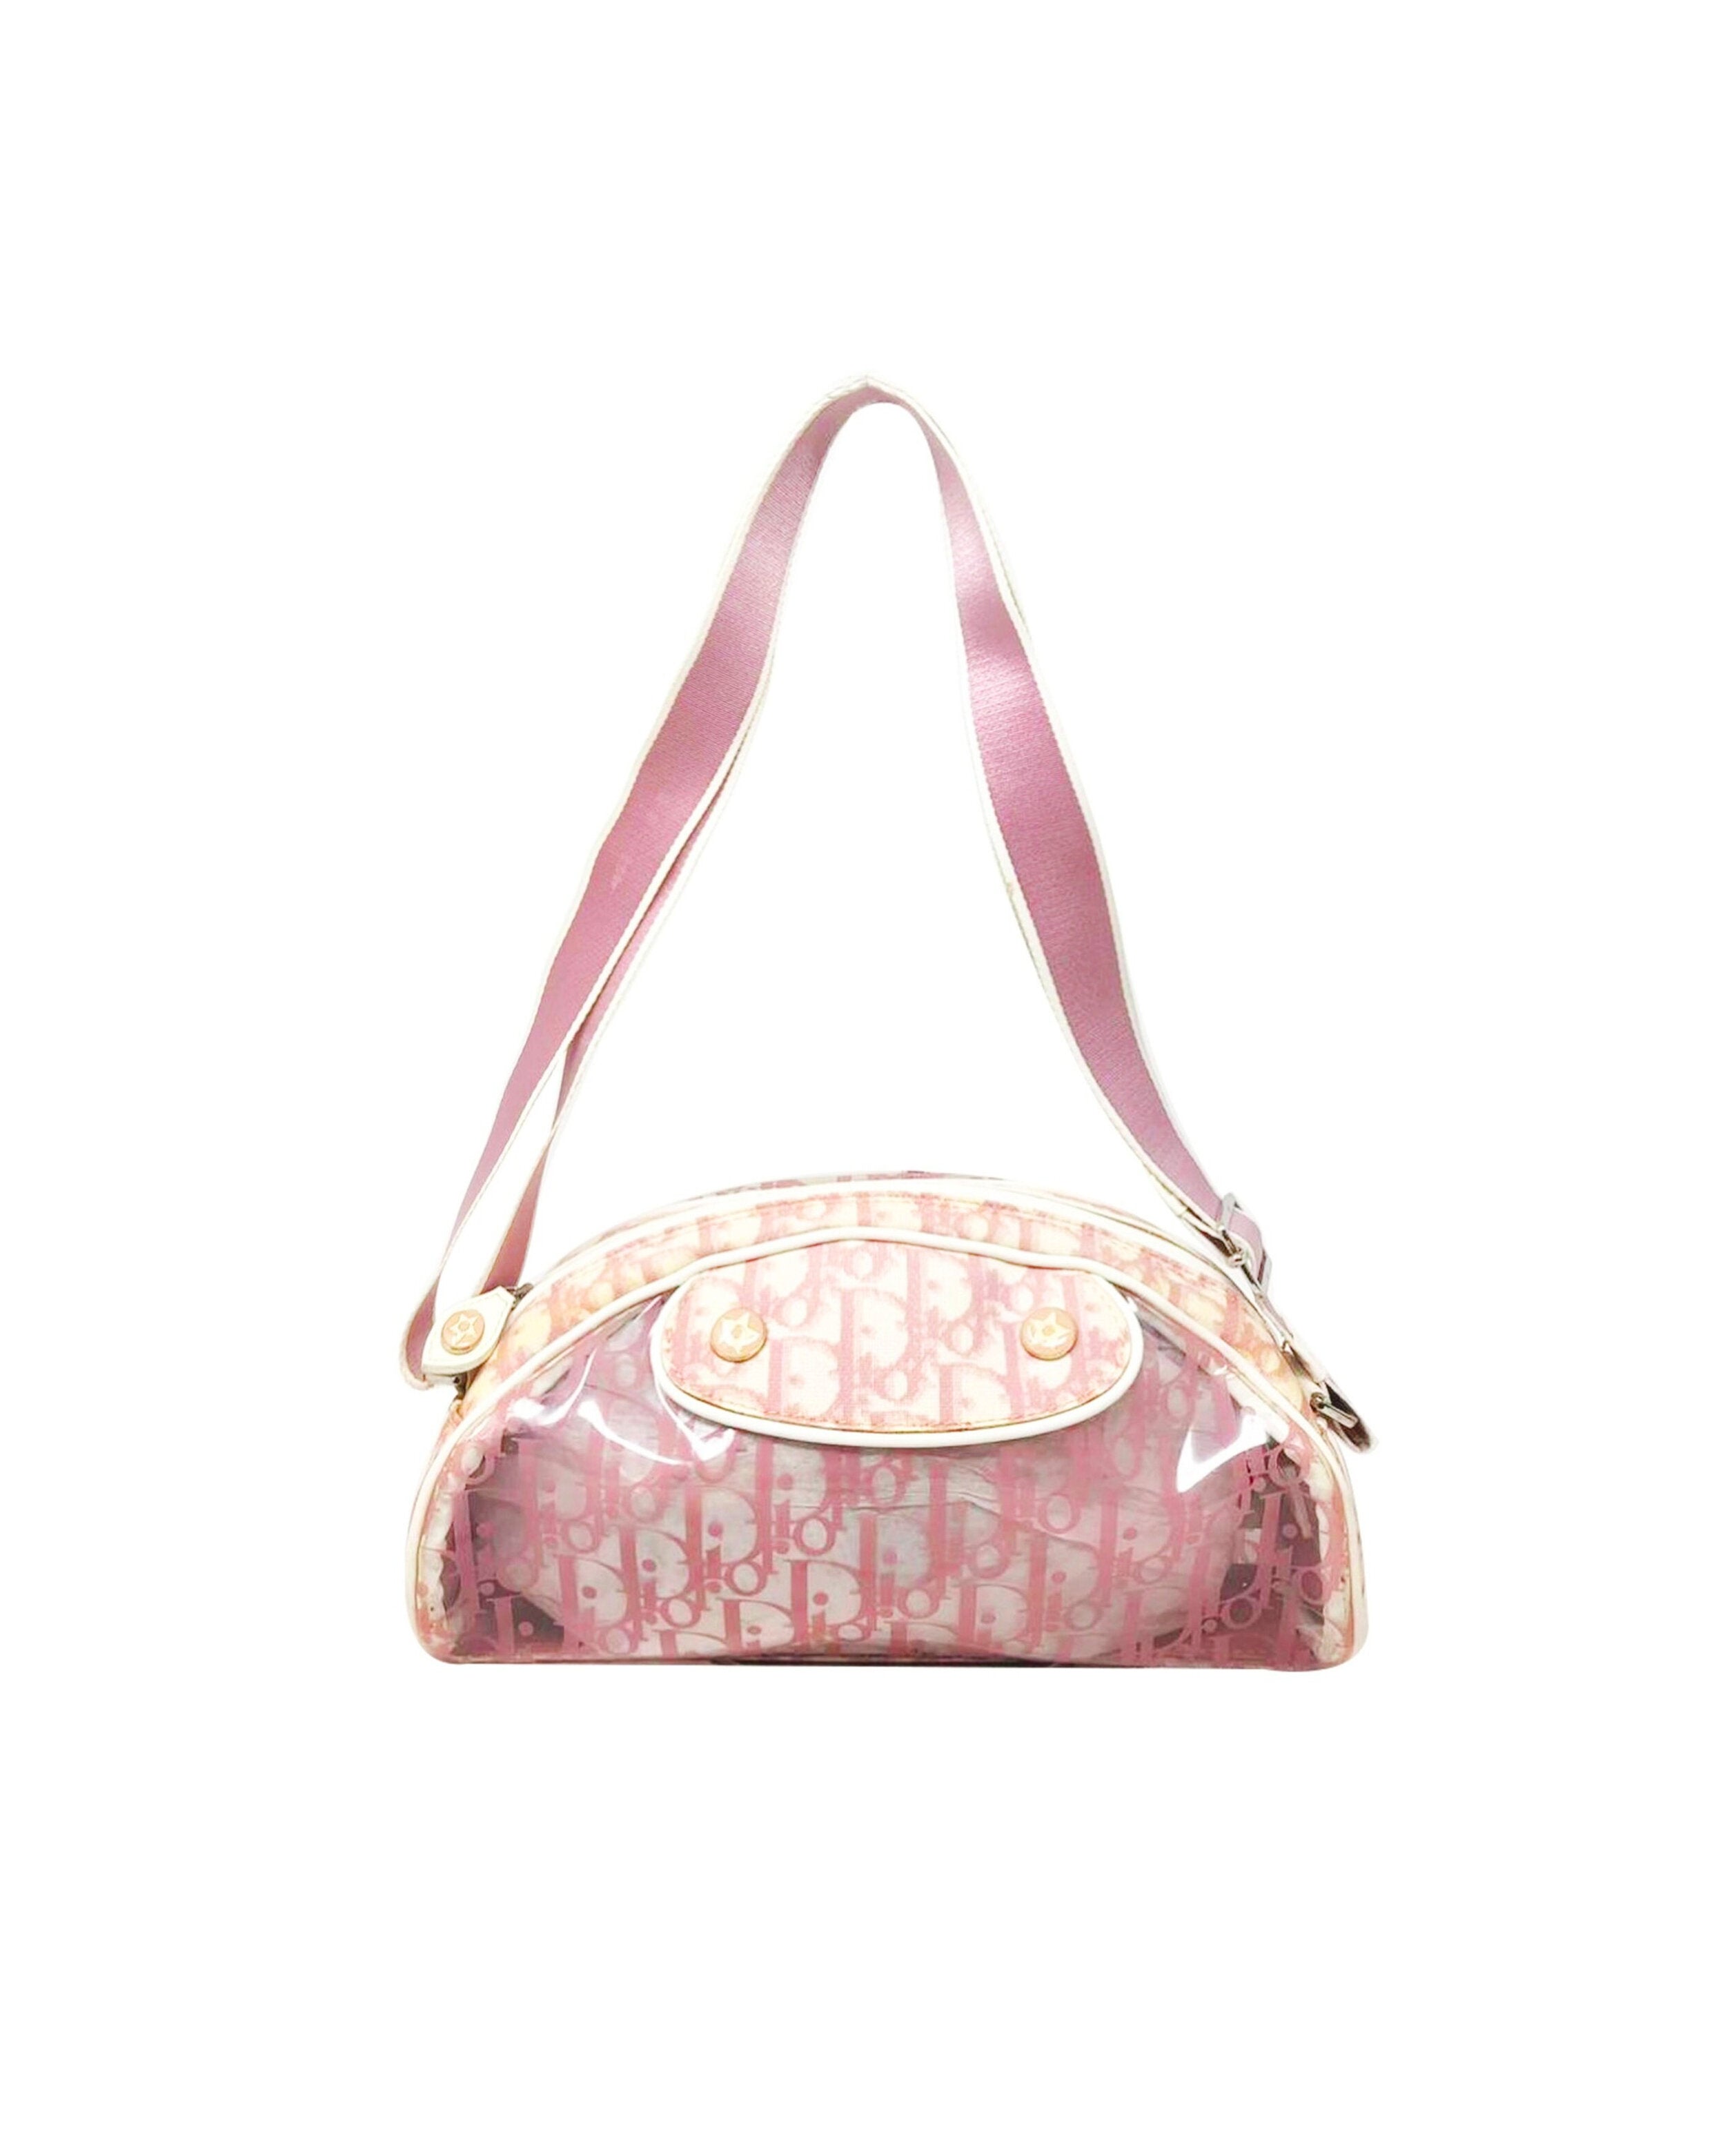 Christian Dior Pink Shoulder Bags